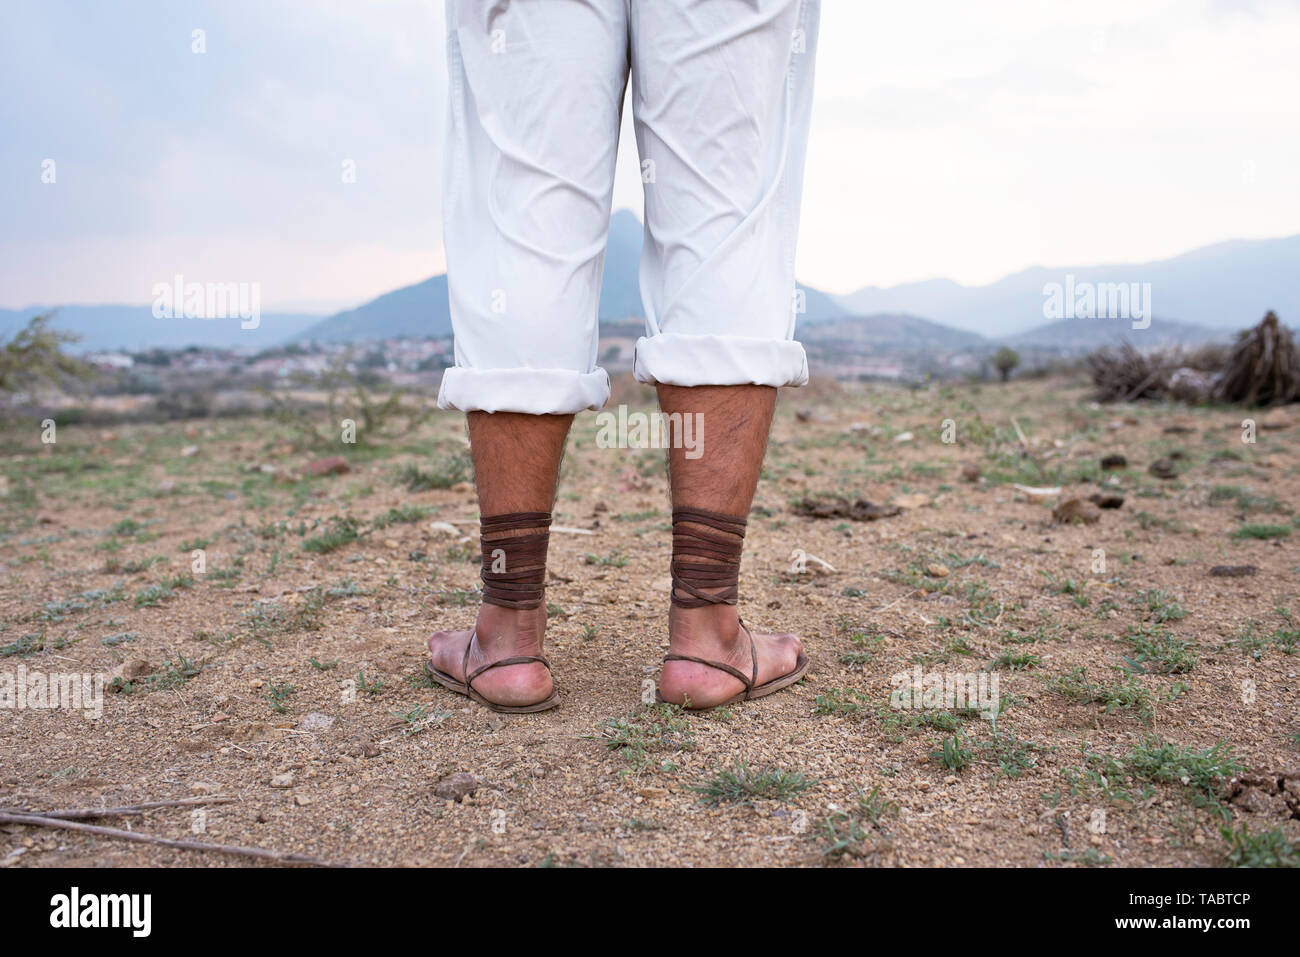 Mann von hinten stehend auf trockenem Boden tragen weiße Hosen und Alten, gladiator Stil Schnürschuhe Sandalen. Hf-outdoor-Konzept. Oaxaca, Mexiko Stockfoto